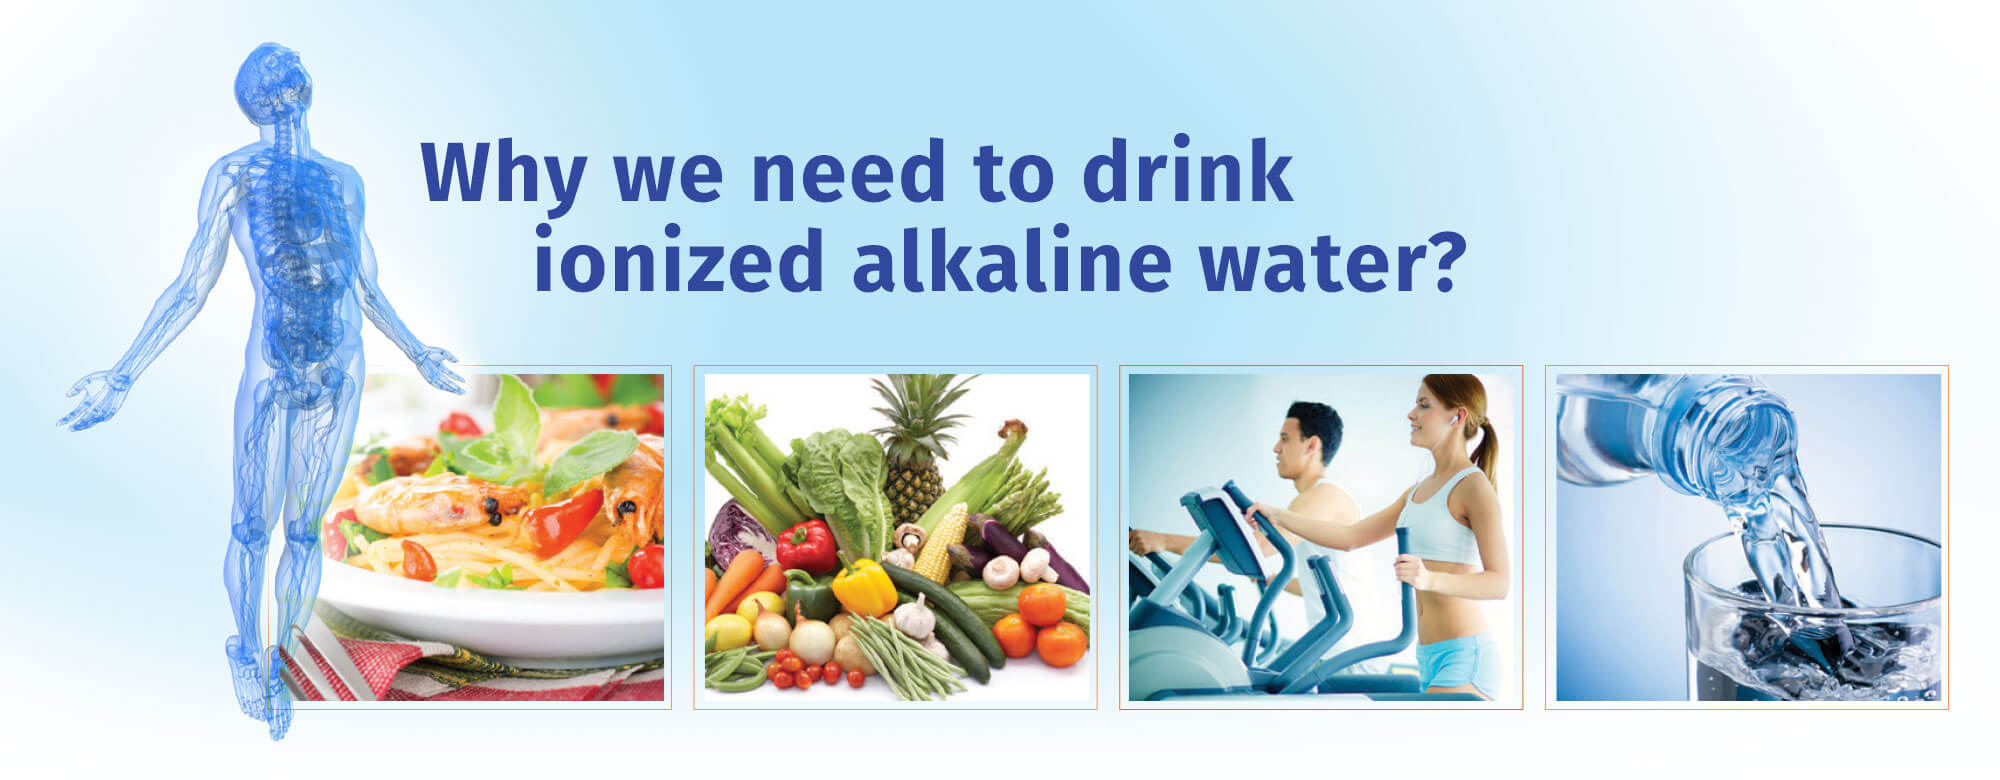 About Alkaline